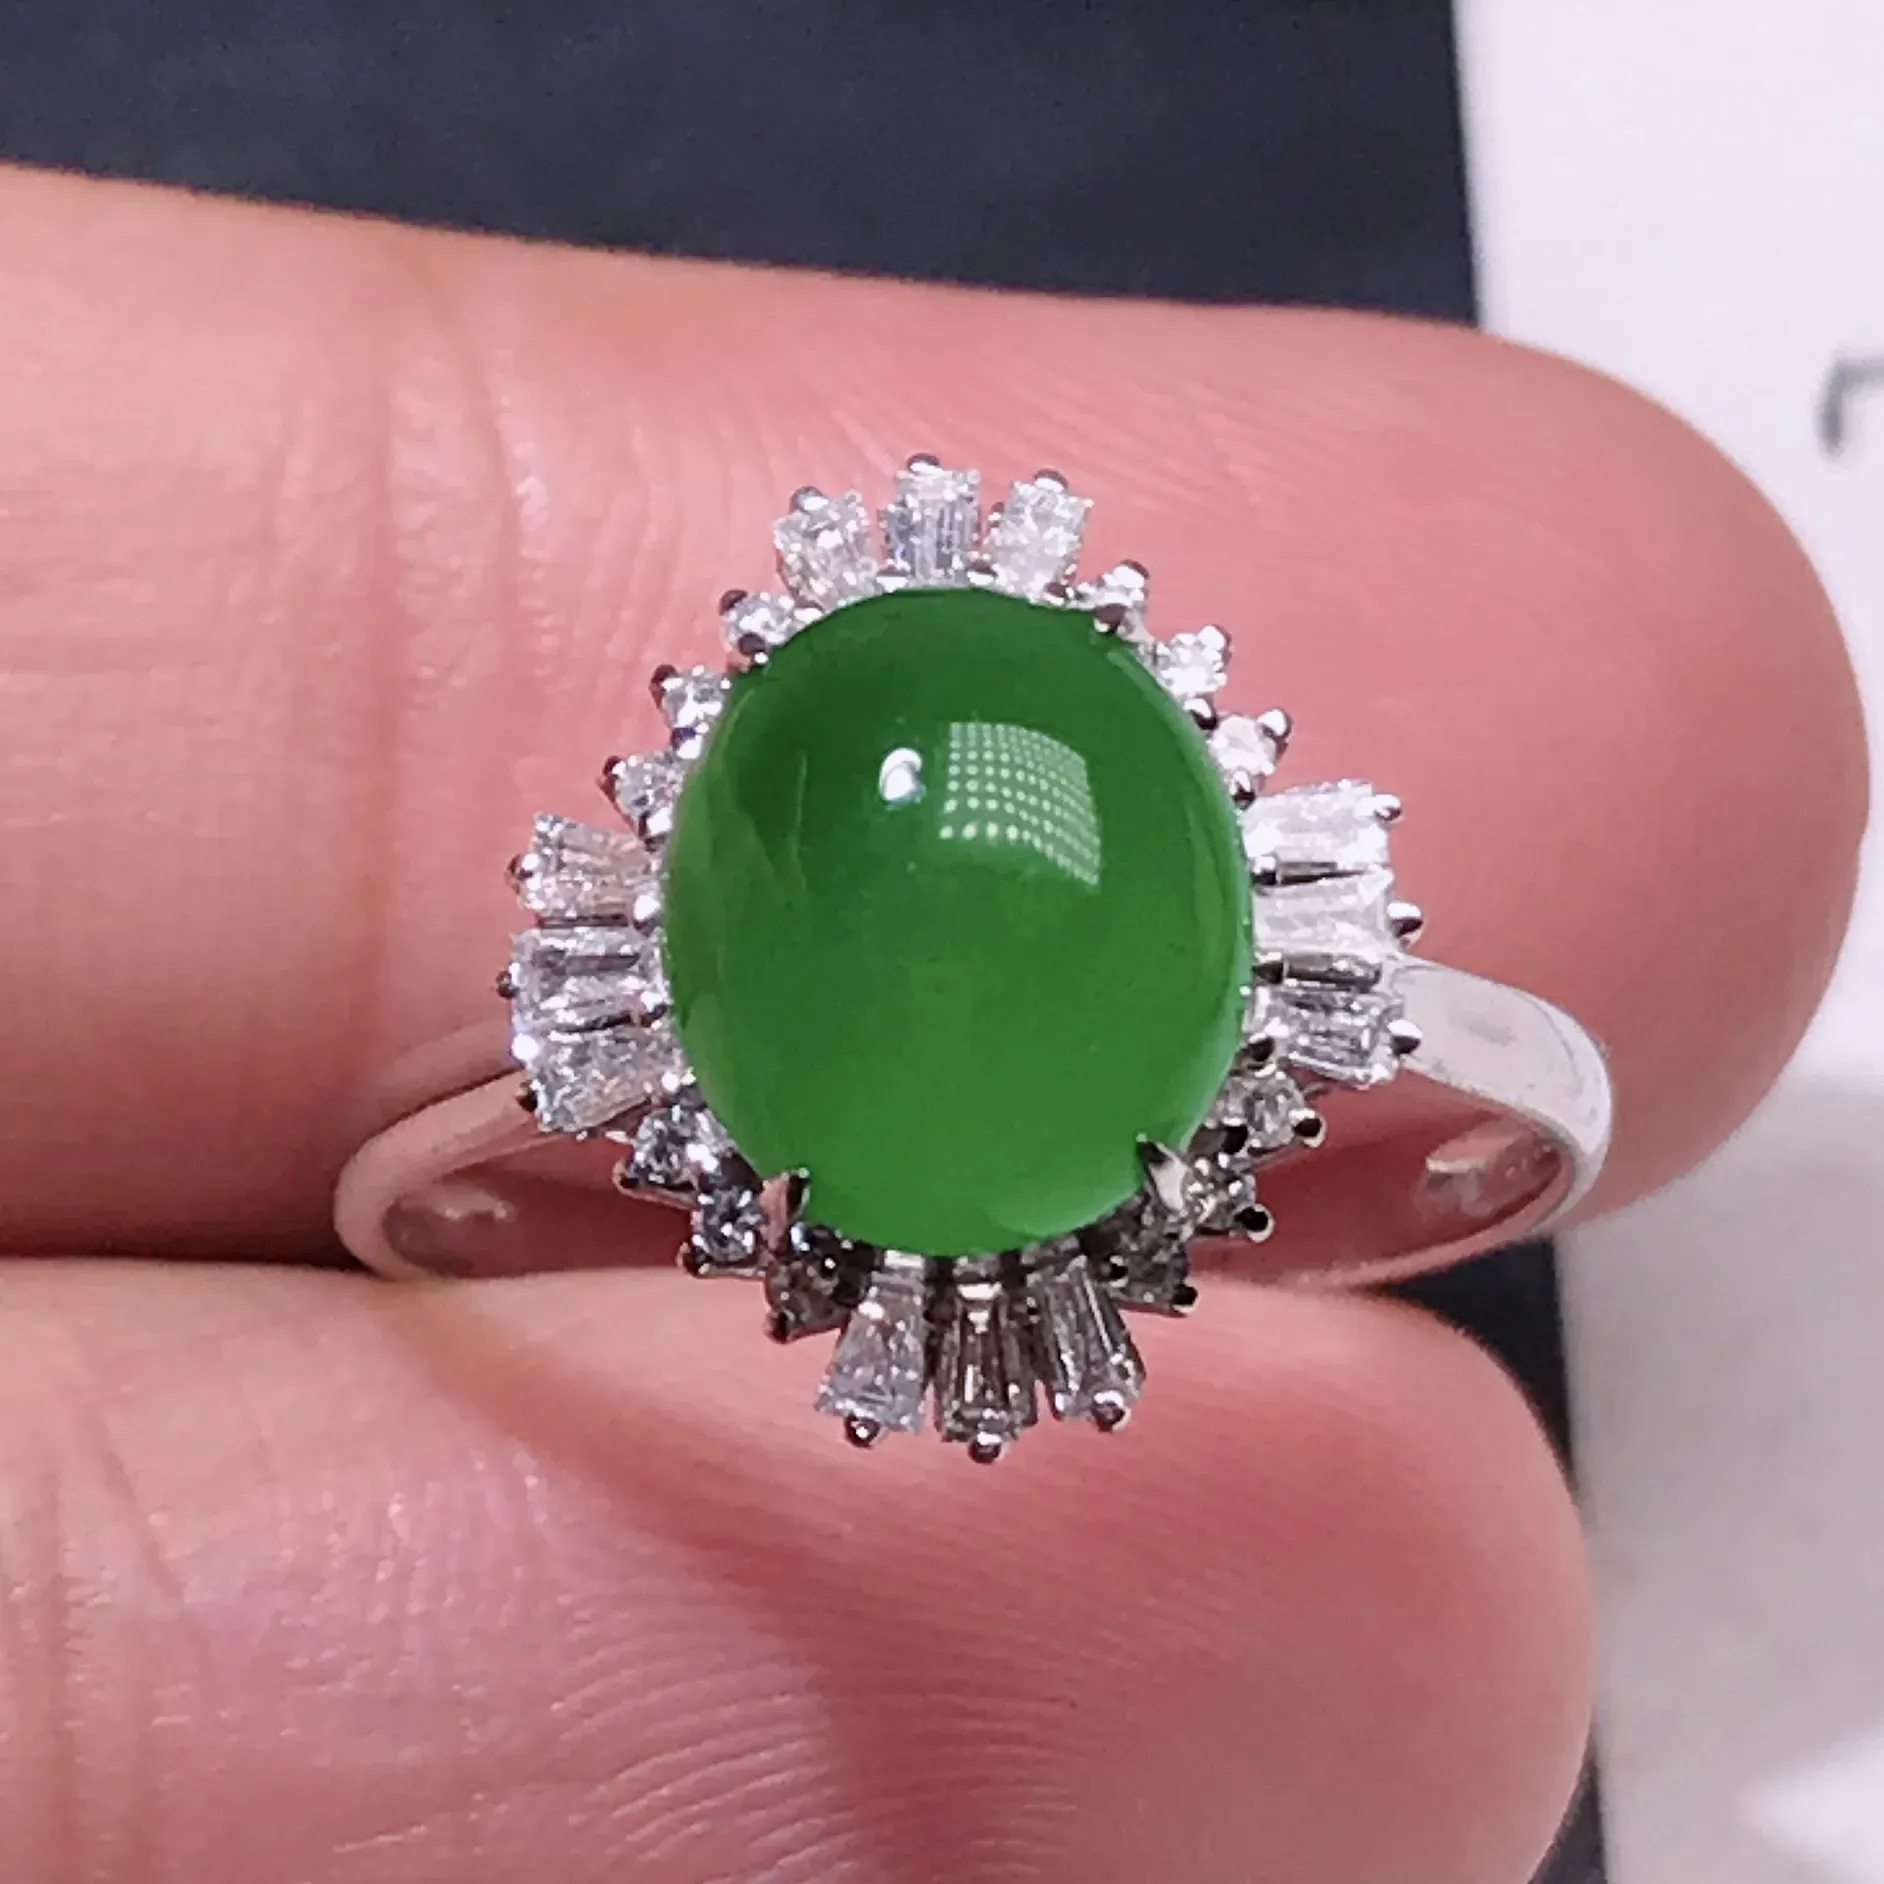 严选推荐戒指，老坑冰种阳绿色翡翠蛋面女戒指，18k金钻镶嵌而成，品相佳，佩戴效果佳，尽显气质。